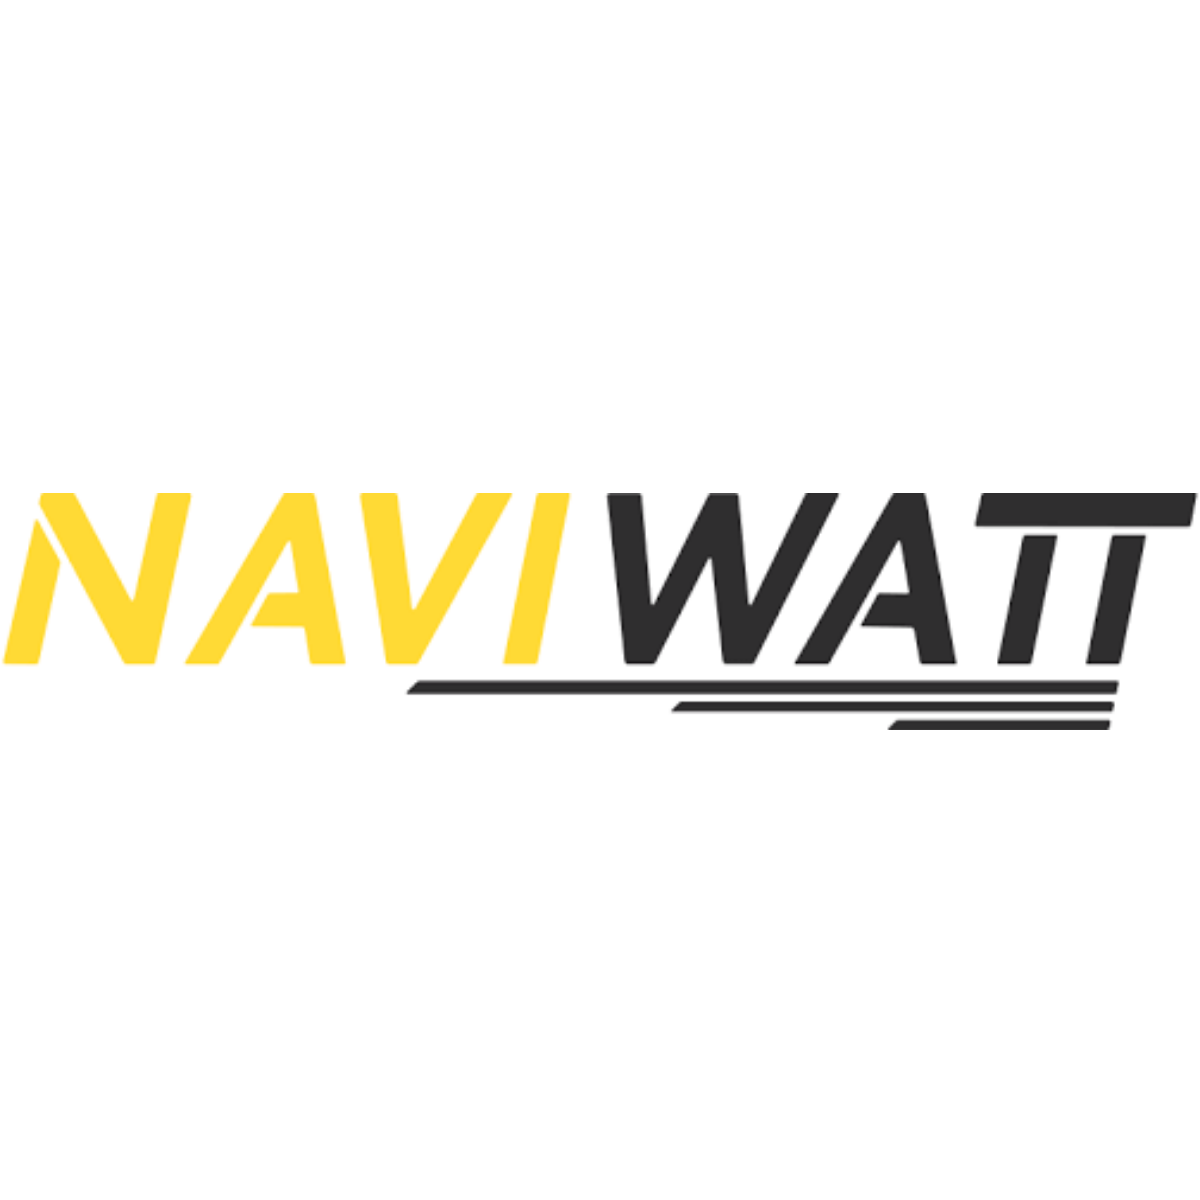 Naviwatt